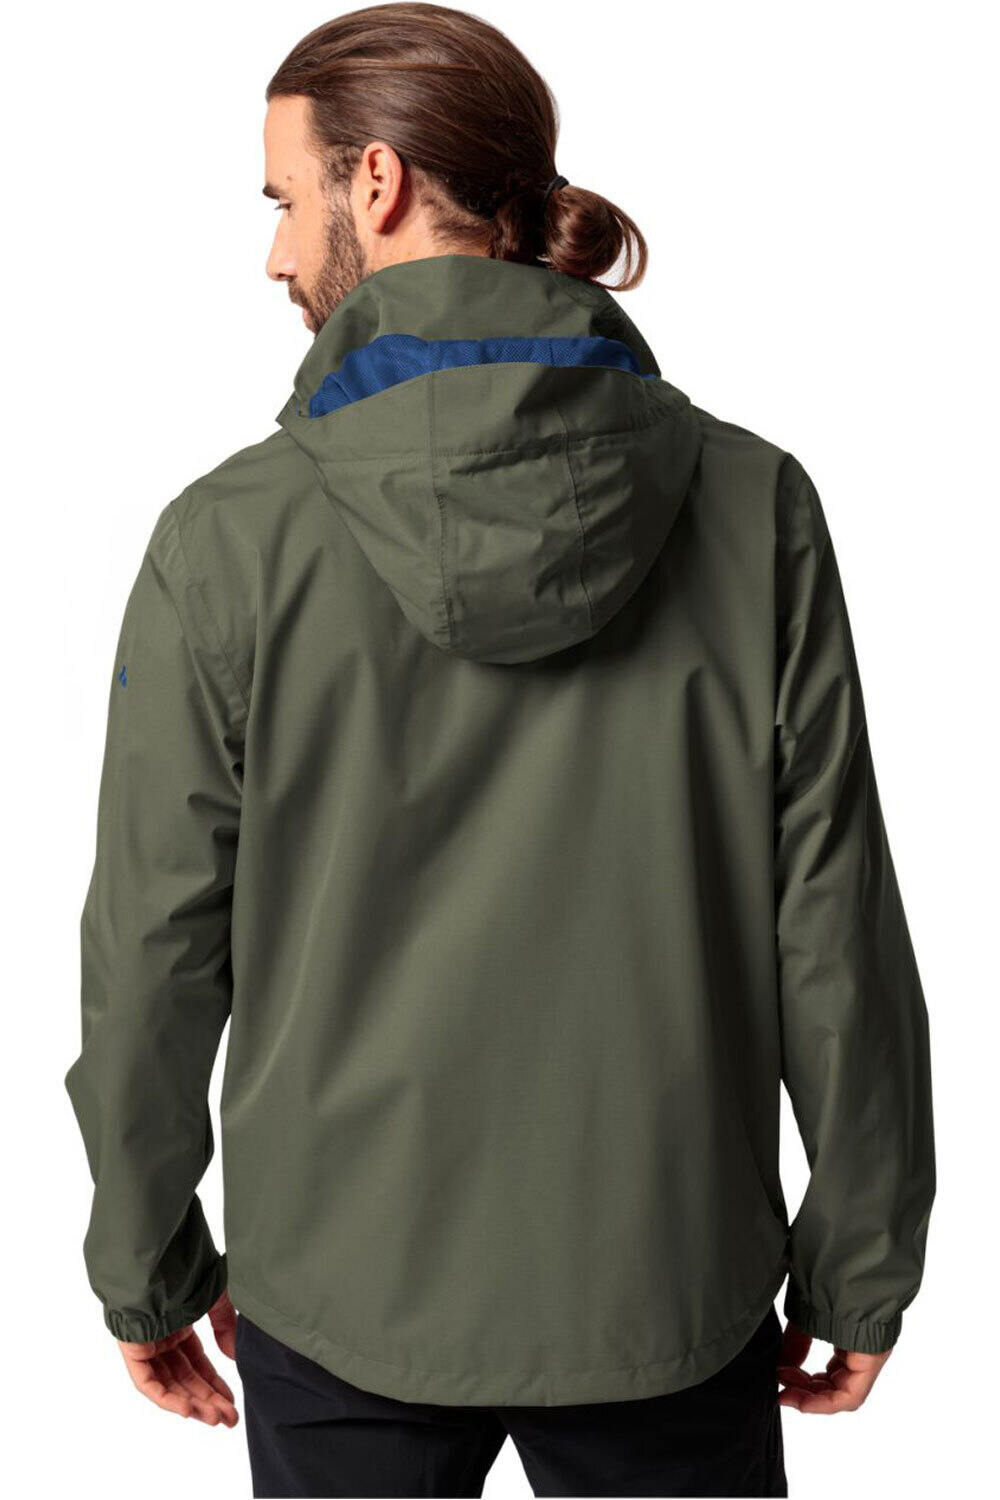 Vaude chaqueta impermeable hombre Men's Escape Light Jacket vista trasera